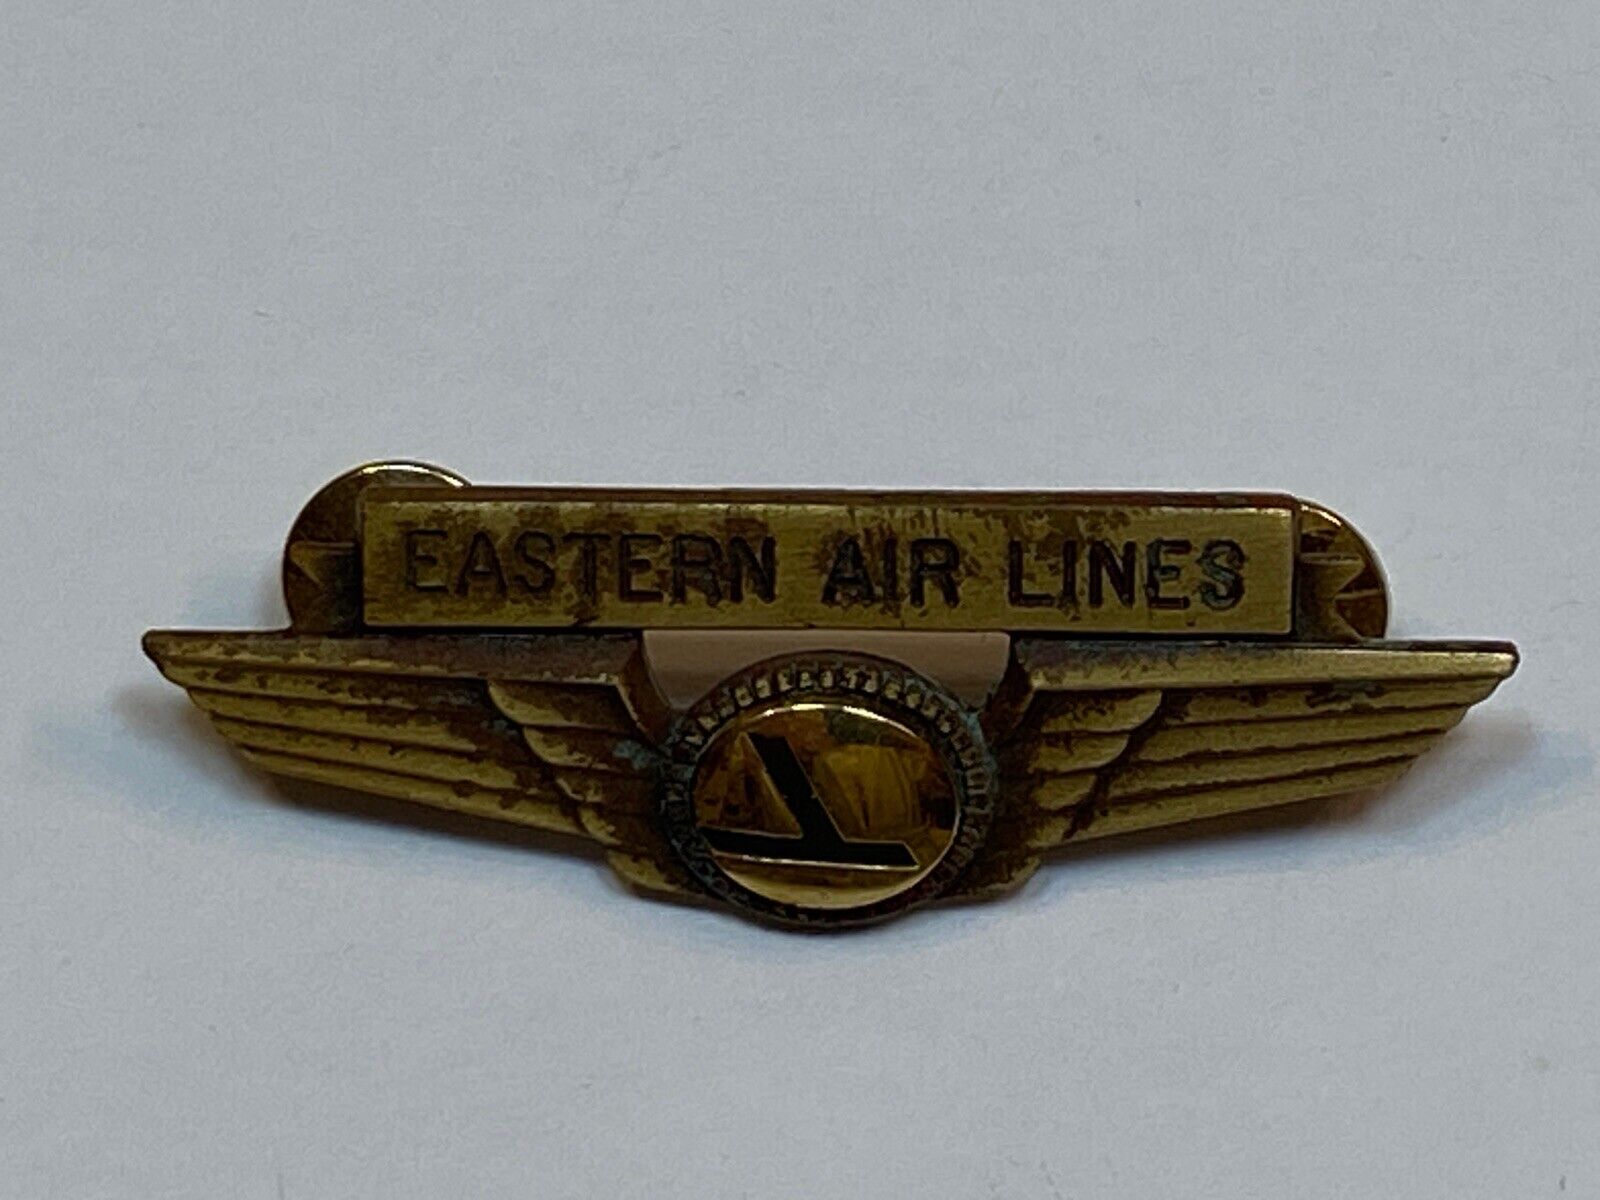 Eastern Airlines Air Lines Wings Vintage Pin Old Logo Flight Crew Uniform Metal